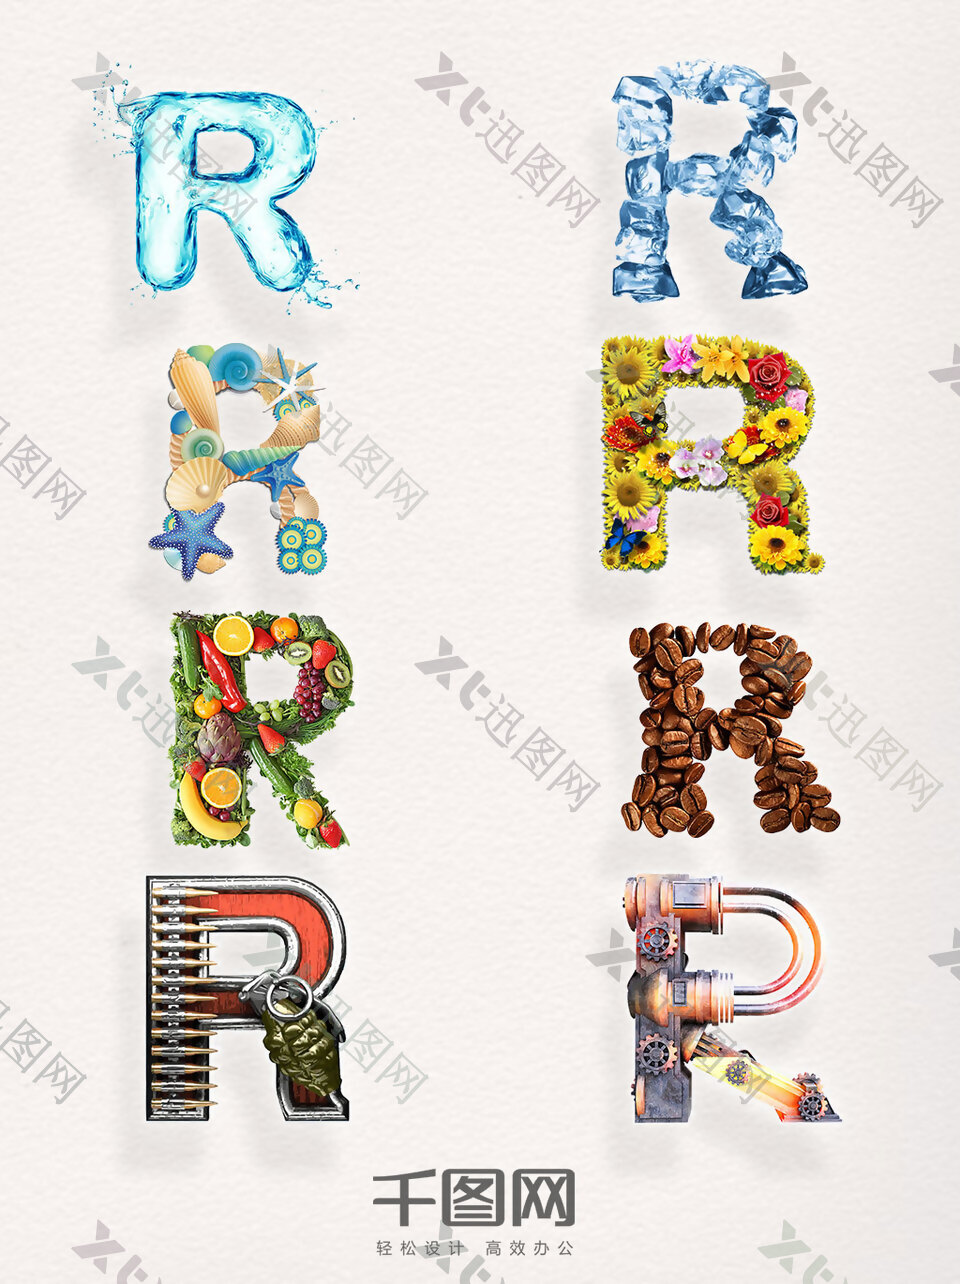 创意图标元素商标R素材艺术字母图案集合